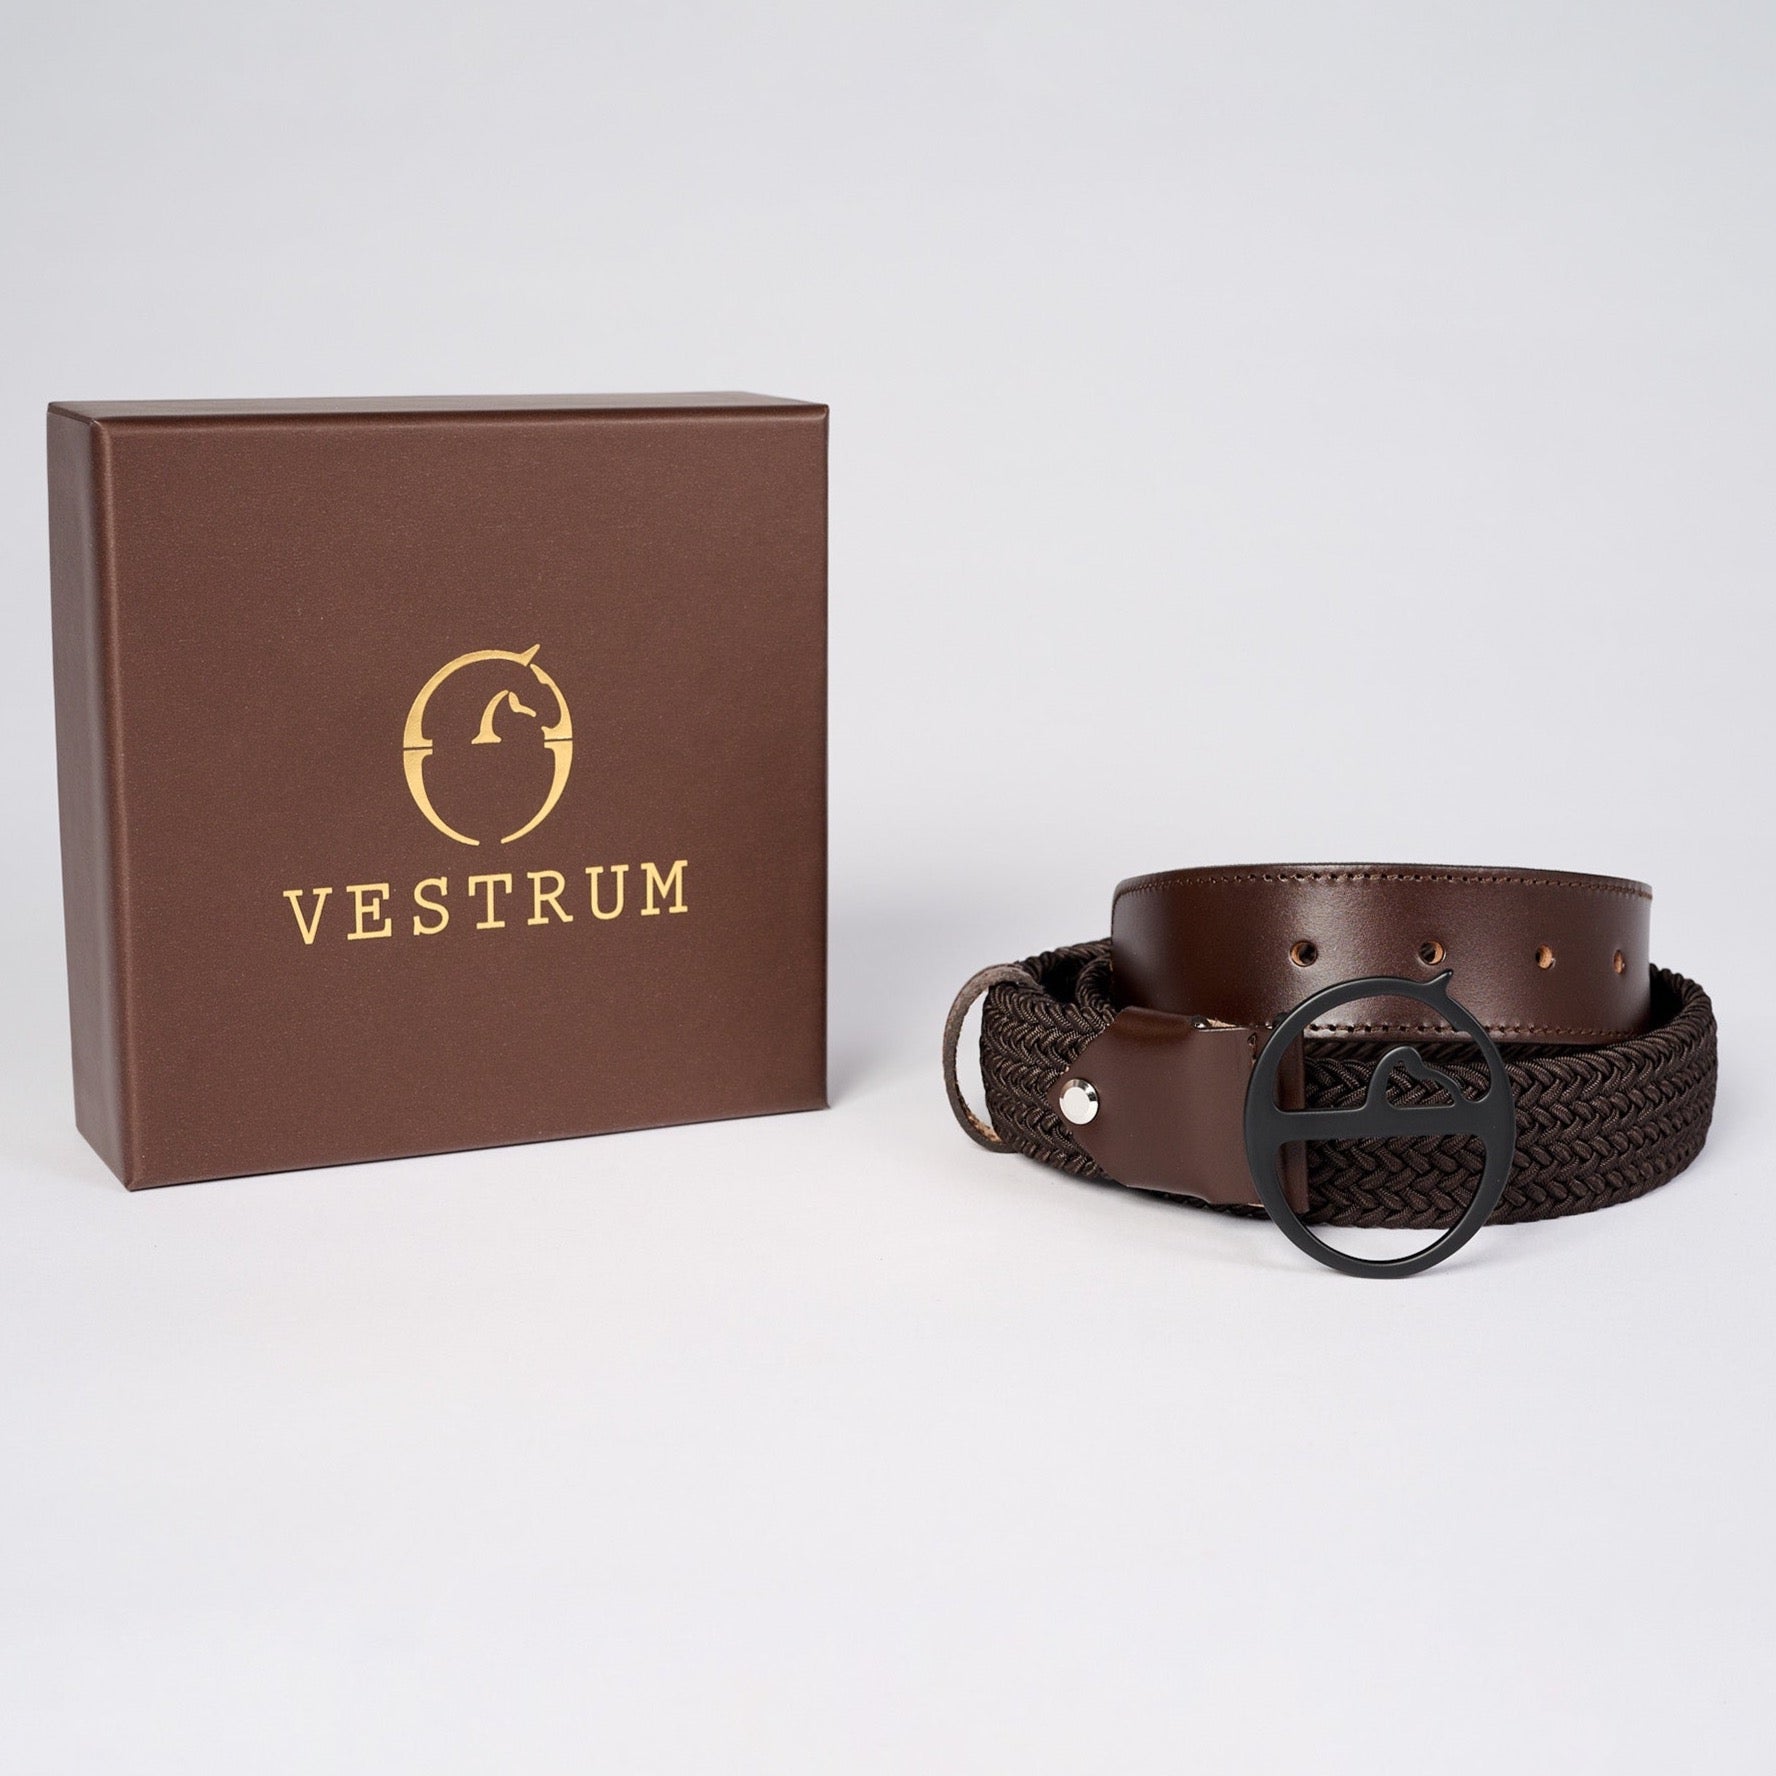 Der Vestrum Faro Gürtel mit Schnalle mit Vestrum-Logo ist ein hochwertiges Unisex-Accessoire, das aus exquisitem Vachetteleder gefertigt ist. Das Leder verleiht dem Gürtel nicht nur eine luxuriöse Optik, sondern sorgt auch für eine lange Haltbarkeit.